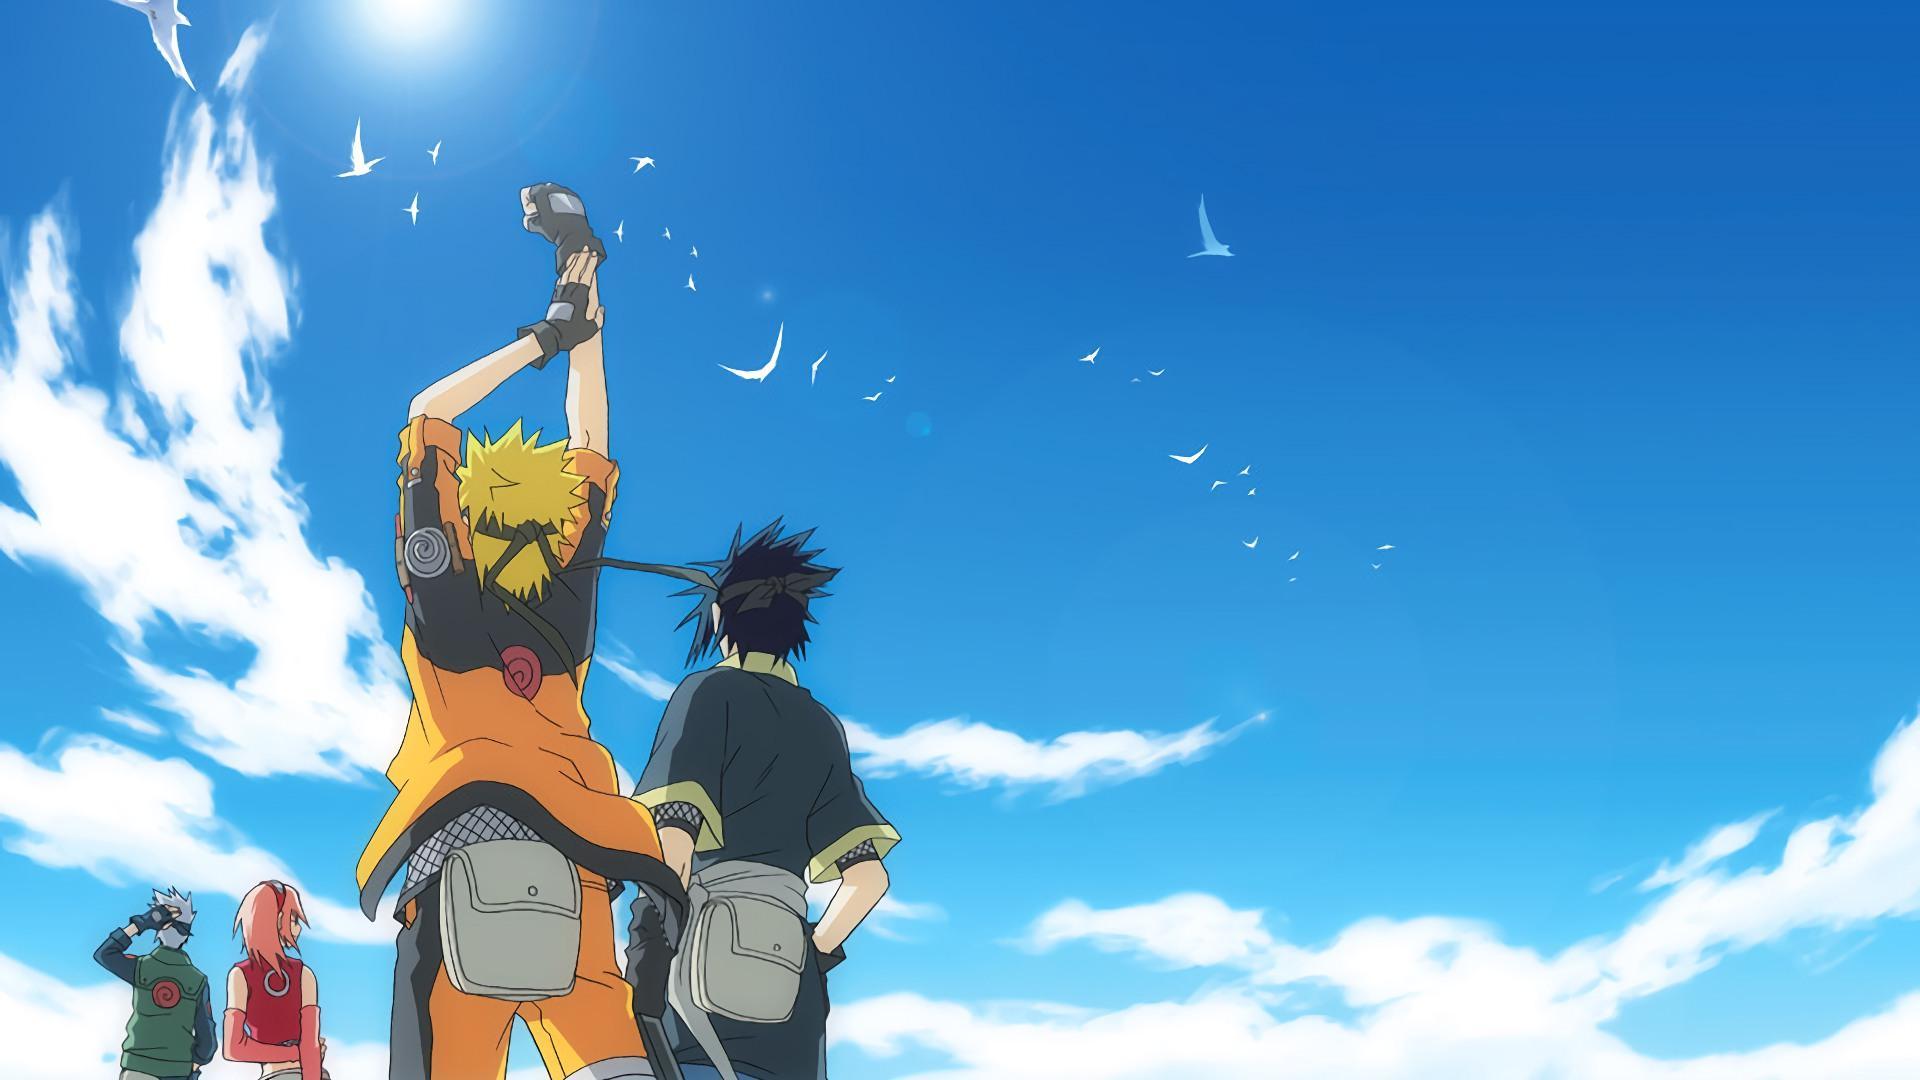 Naruto, một trong những bộ anime được yêu thích nhất, mang đến cho bạn cảm giác hưng phấn và không ngừng vươn lên. Và hình nền Naruto với phong cách độc đáo này sẽ khiến bạn chìm đắm trong thế giới đầy sức mạnh và niềm tin này. Hãy xem ngay!